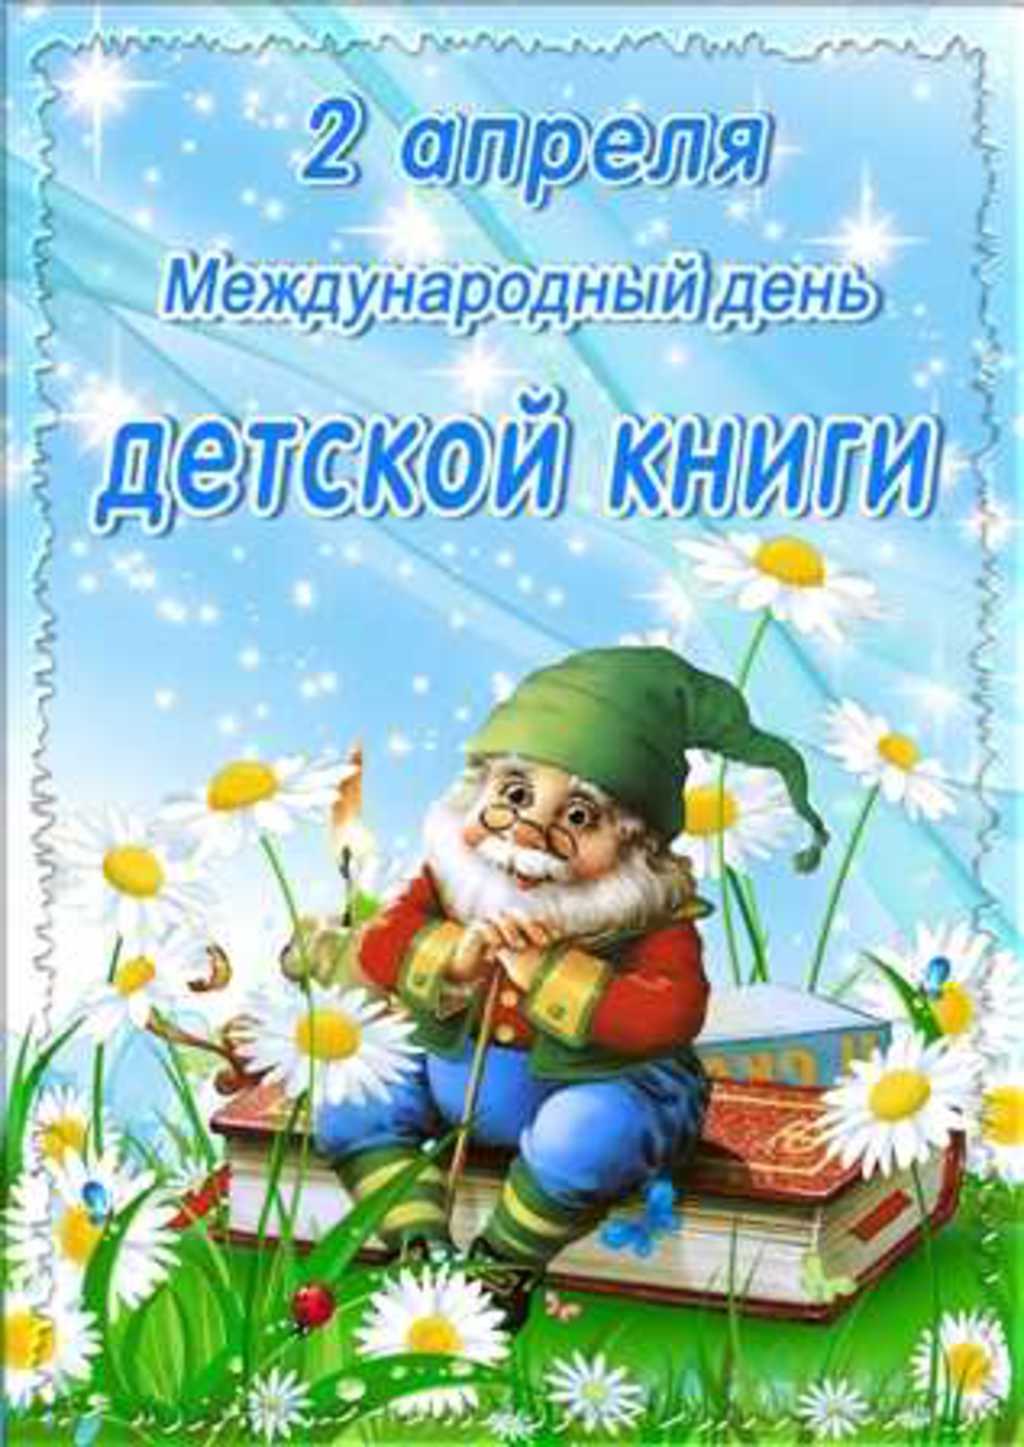 Новые Календарь праздников всемирный день детской книги коллеге